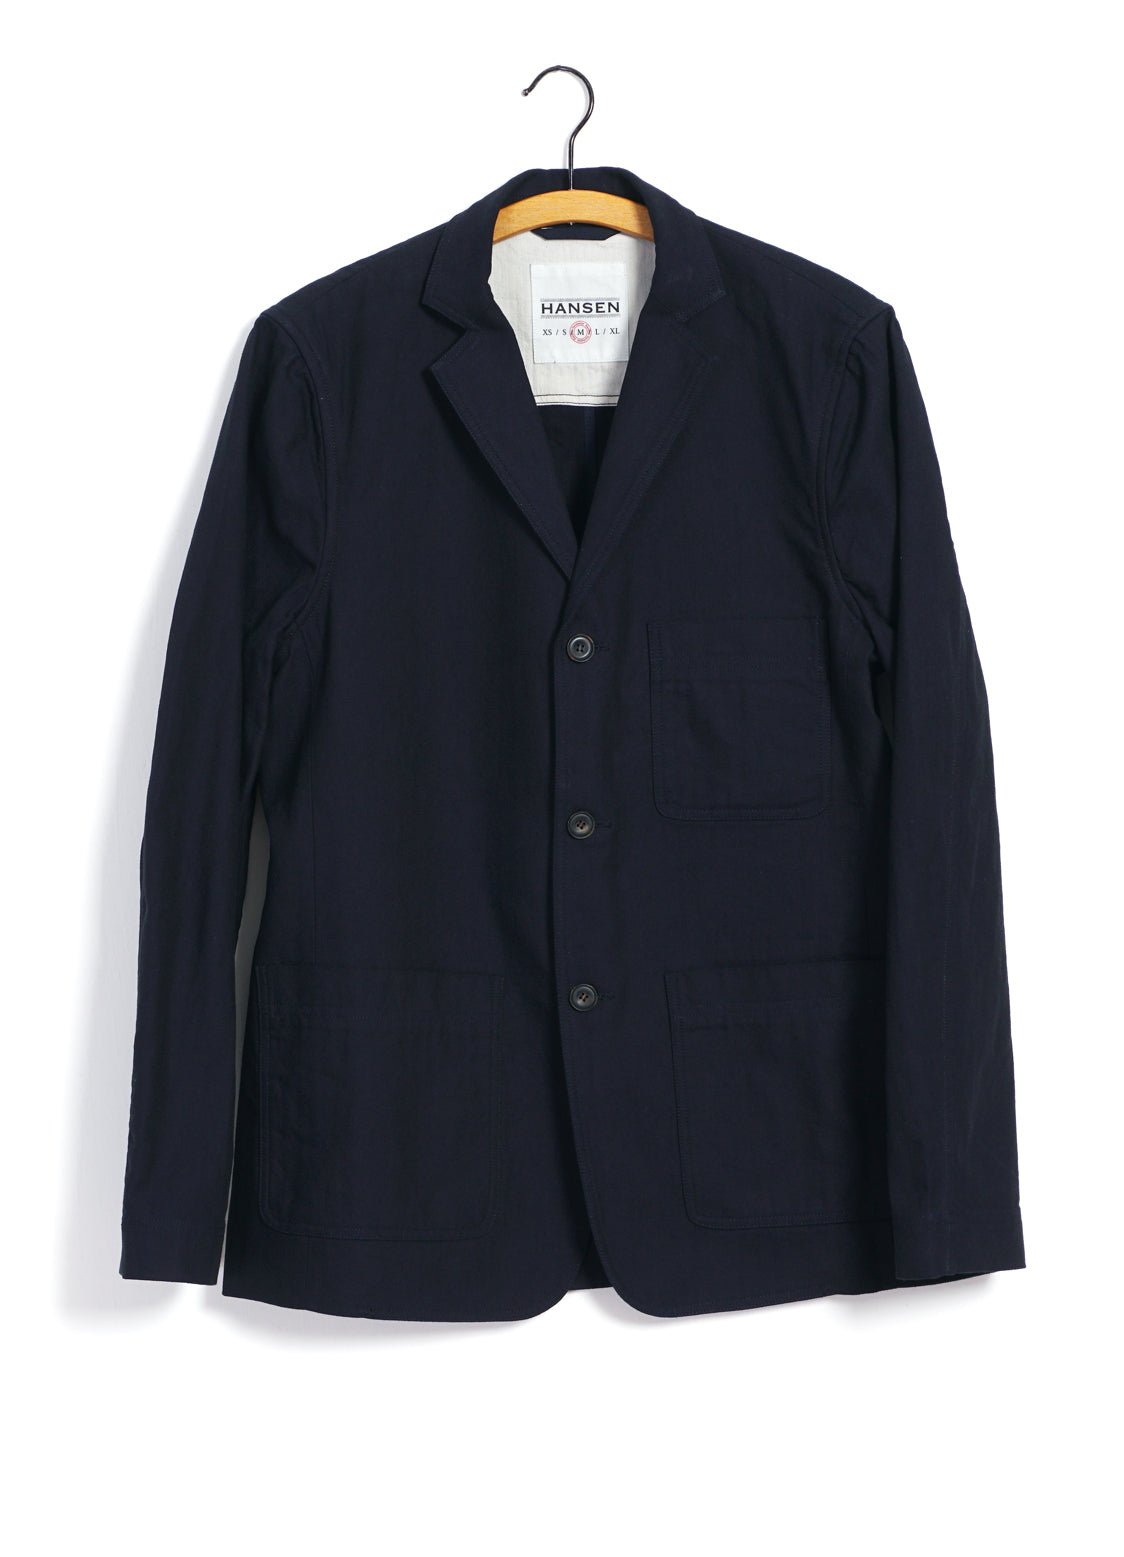 HANSEN GARMENTS - CHARLIE | Easy Three Button Blazer | Indigo Herringbone - HANSEN Garments